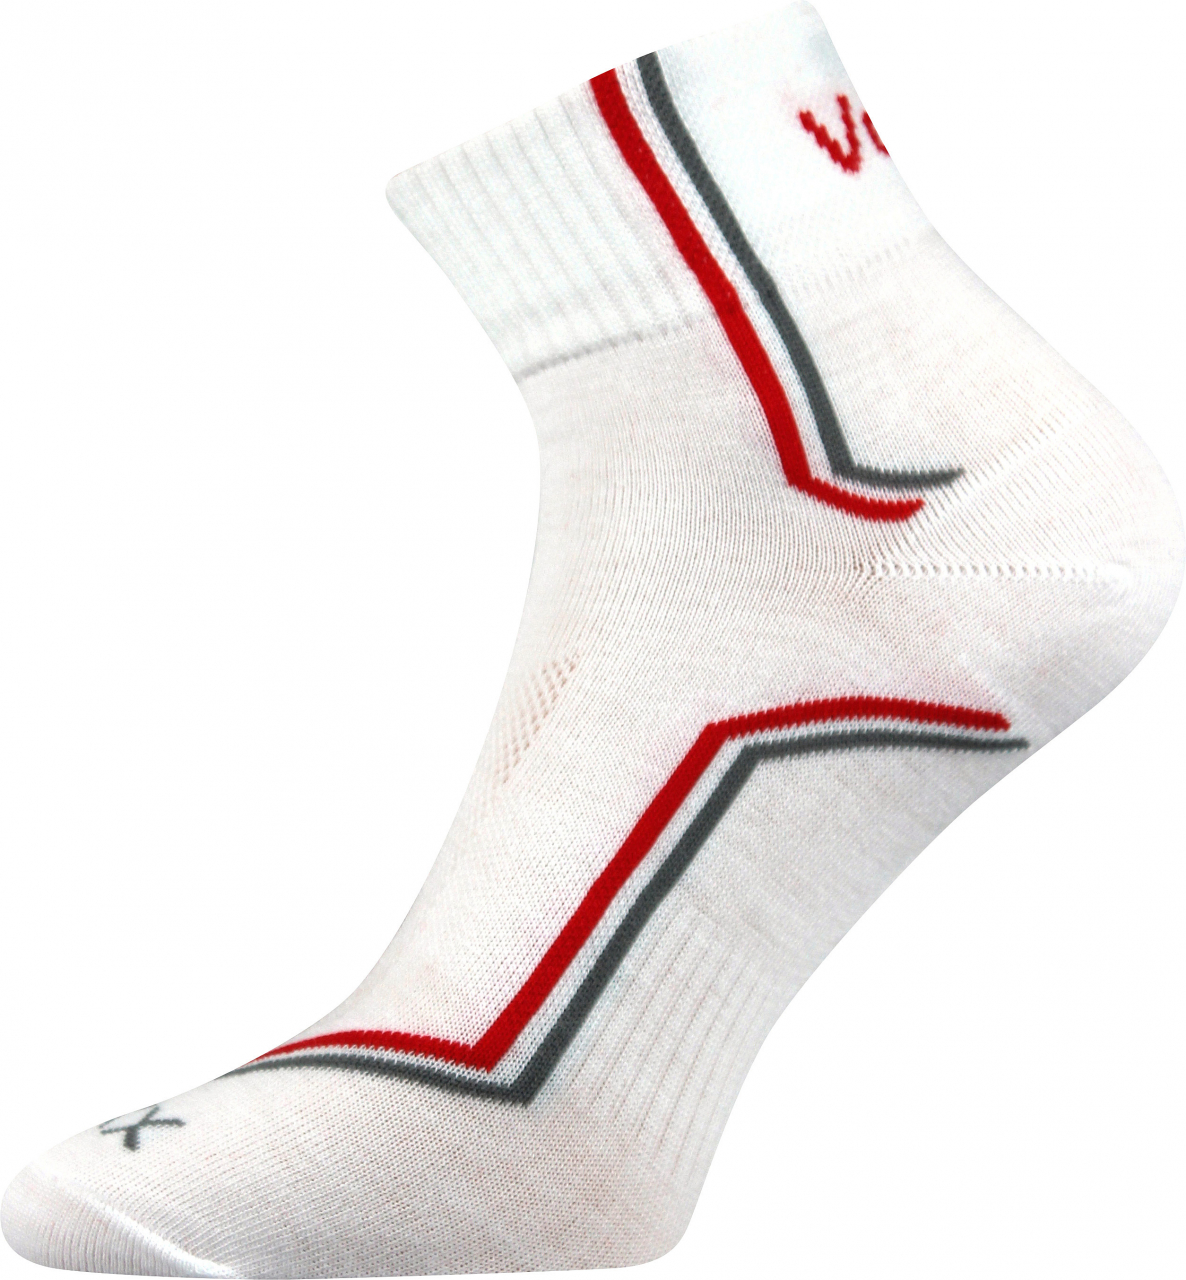 Ponožky sportovní Voxx Kroton silproX - bílé, 43-46